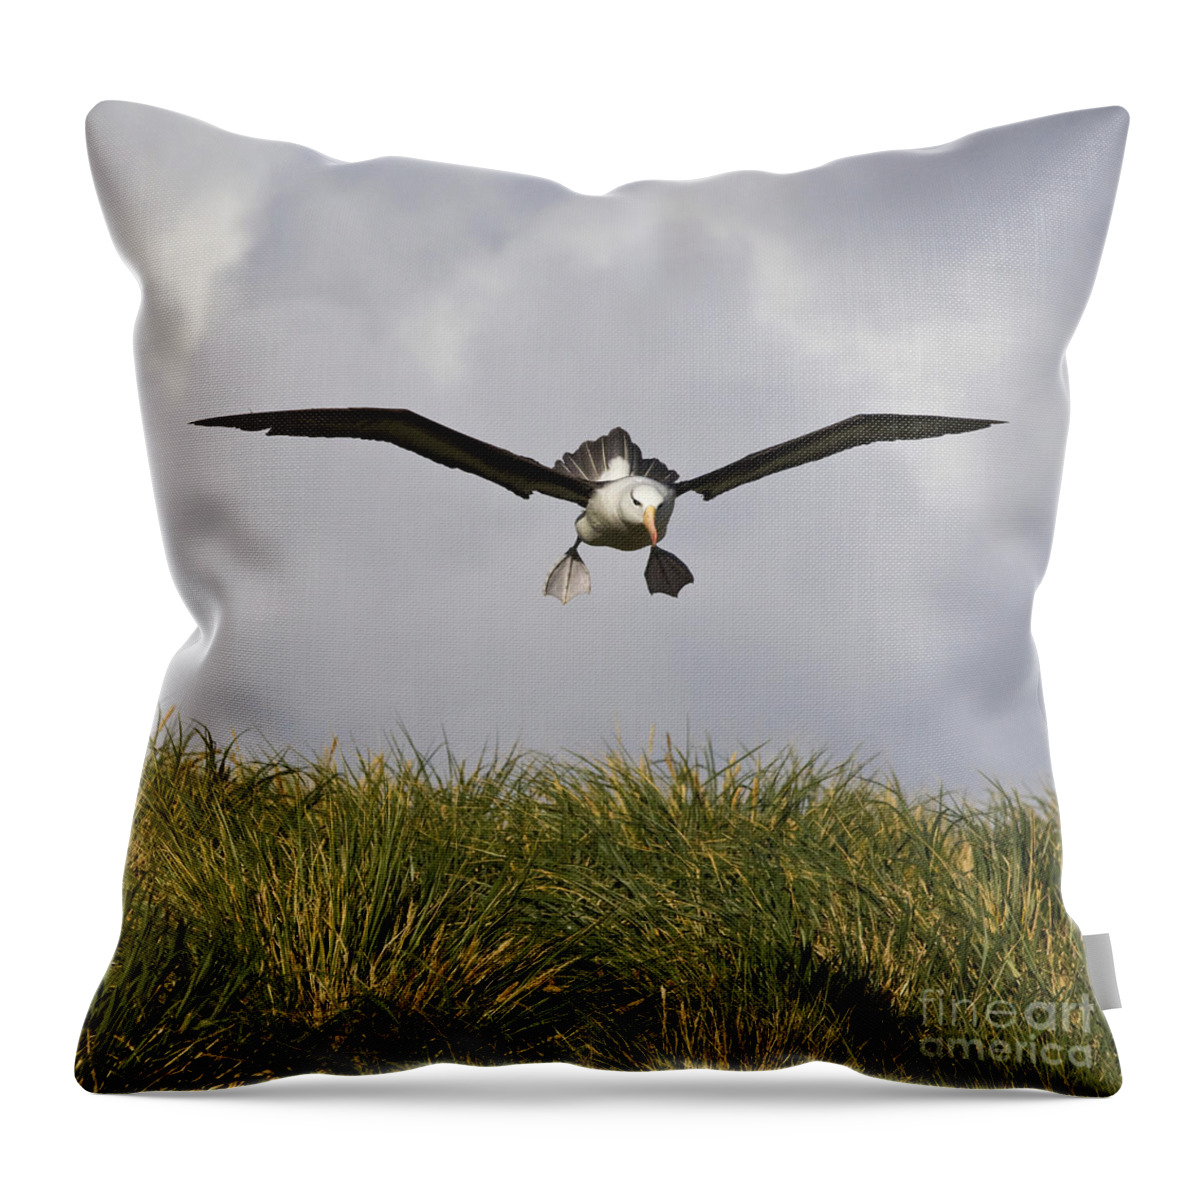 Black-browed Albatross Throw Pillow featuring the photograph Black-browed Albatross #6 by Jean-Louis Klein & Marie-Luce Hubert